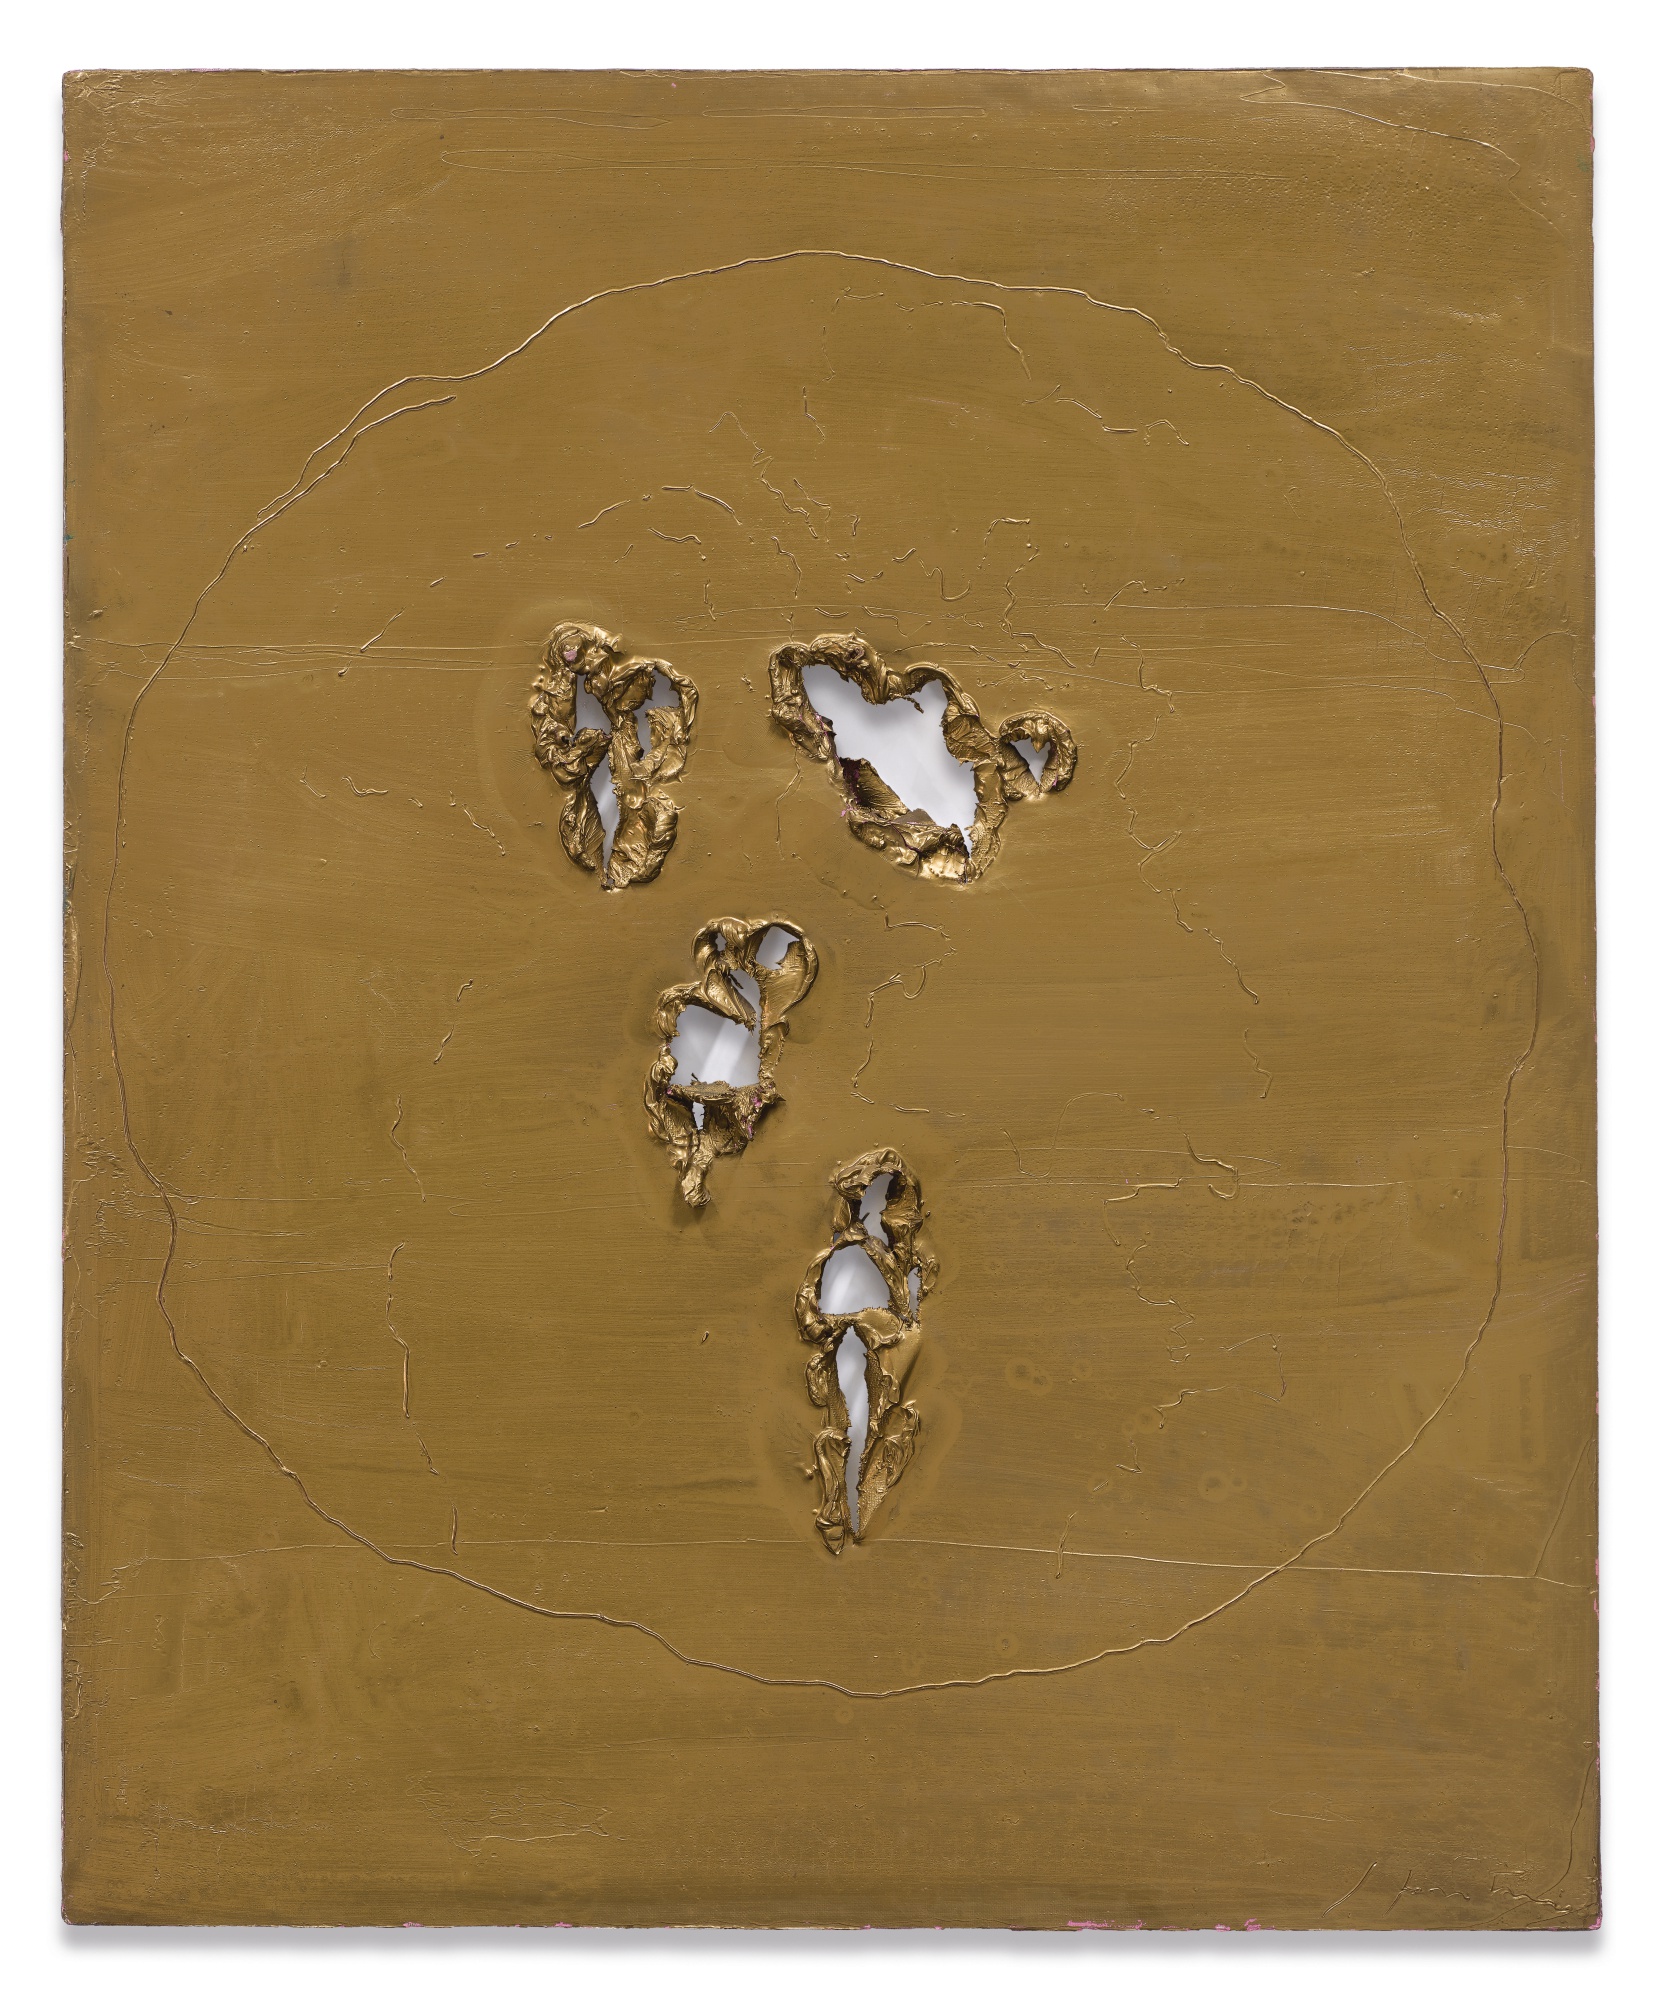 Lotto 12 - LUCIO FONTANA, Concetto Spaziale, 1964. Olio su tela, 73x60.3 cm. Stima: 1.500.000-2.000.000 $. Courtesy: Sotheby's